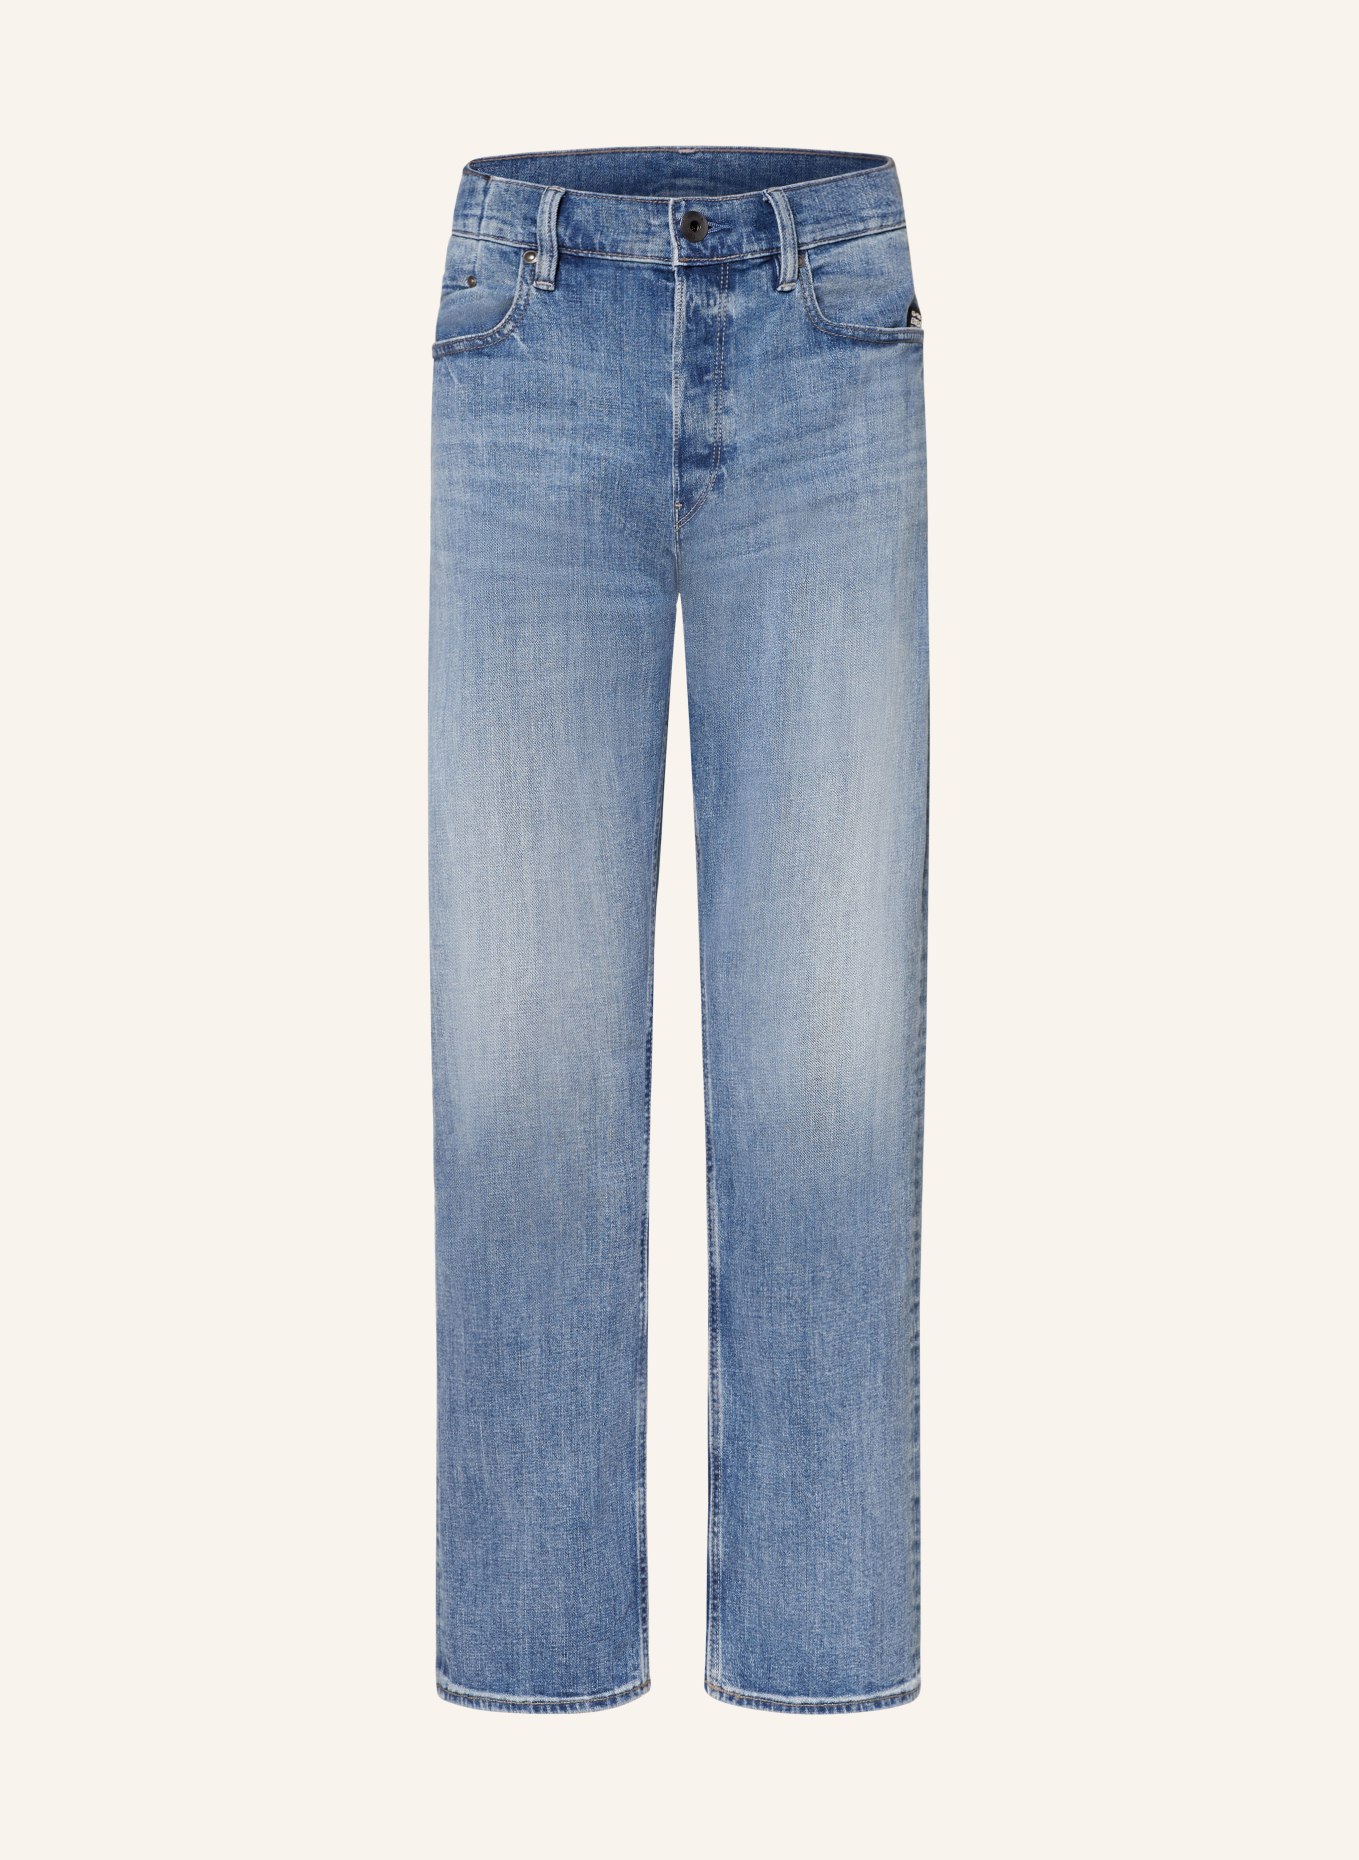 G-Star RAW Jeans DAKOTA Straight Fit, Farbe: D893 faded niagara (Bild 1)